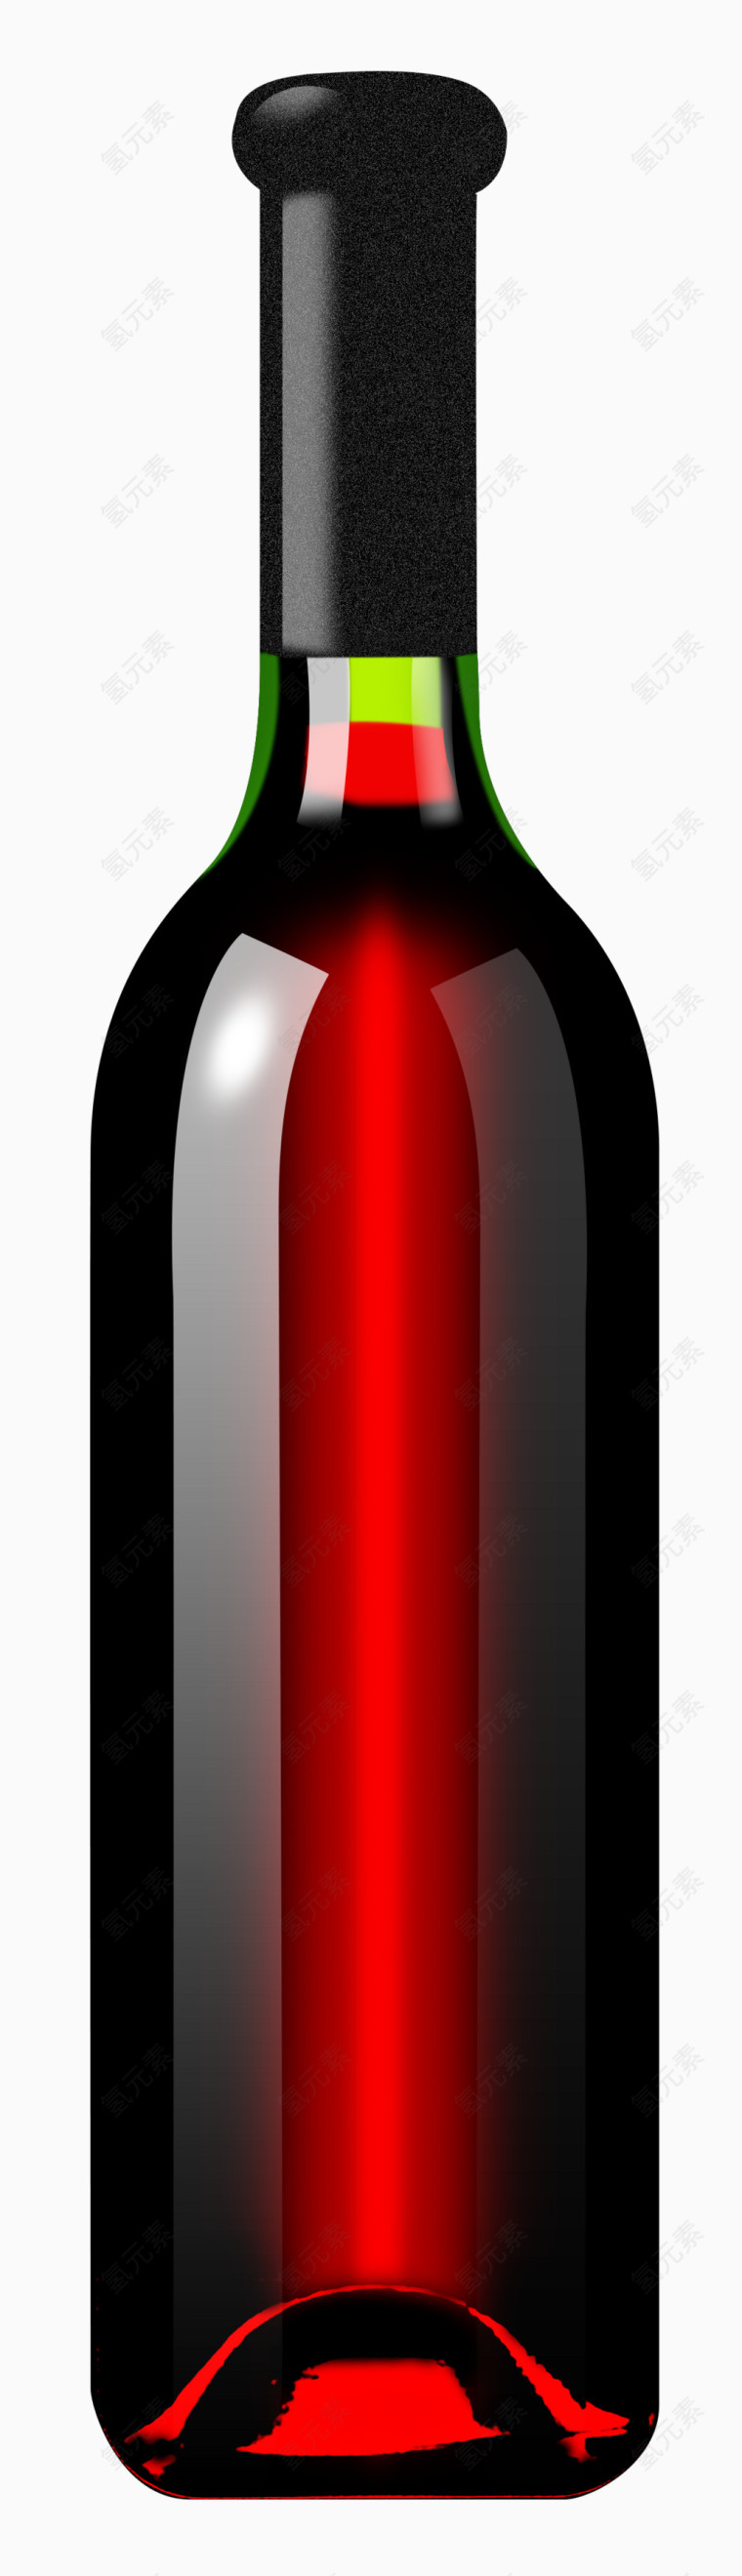 干红酒瓶